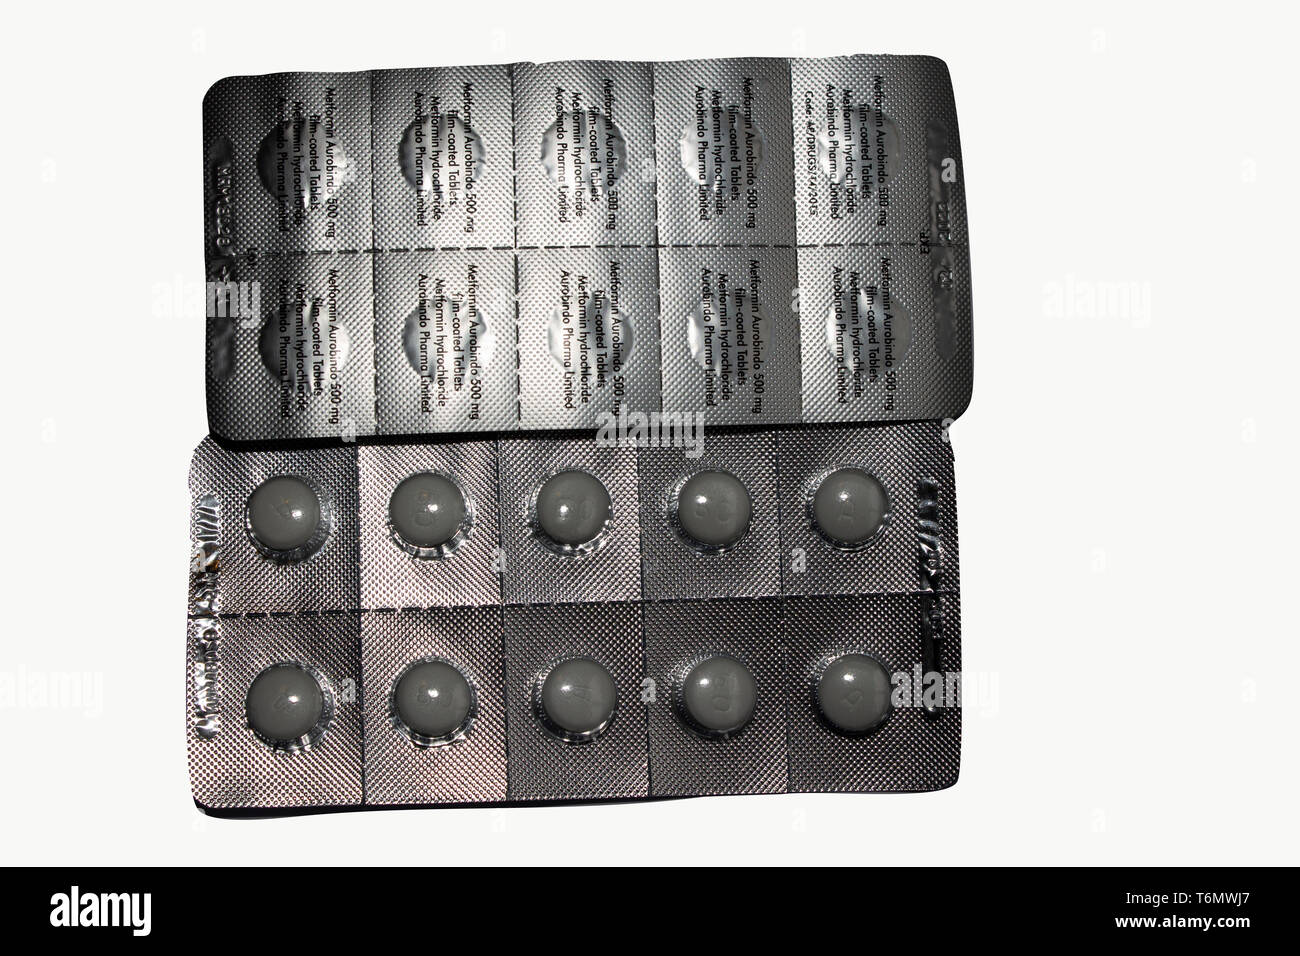 Paquetes blíster de tableta de 60 mg de dosis de un medicamento contra la Diabetes Metaformin popular tratamiento aislado sobre un fondo blanco. Foto de stock